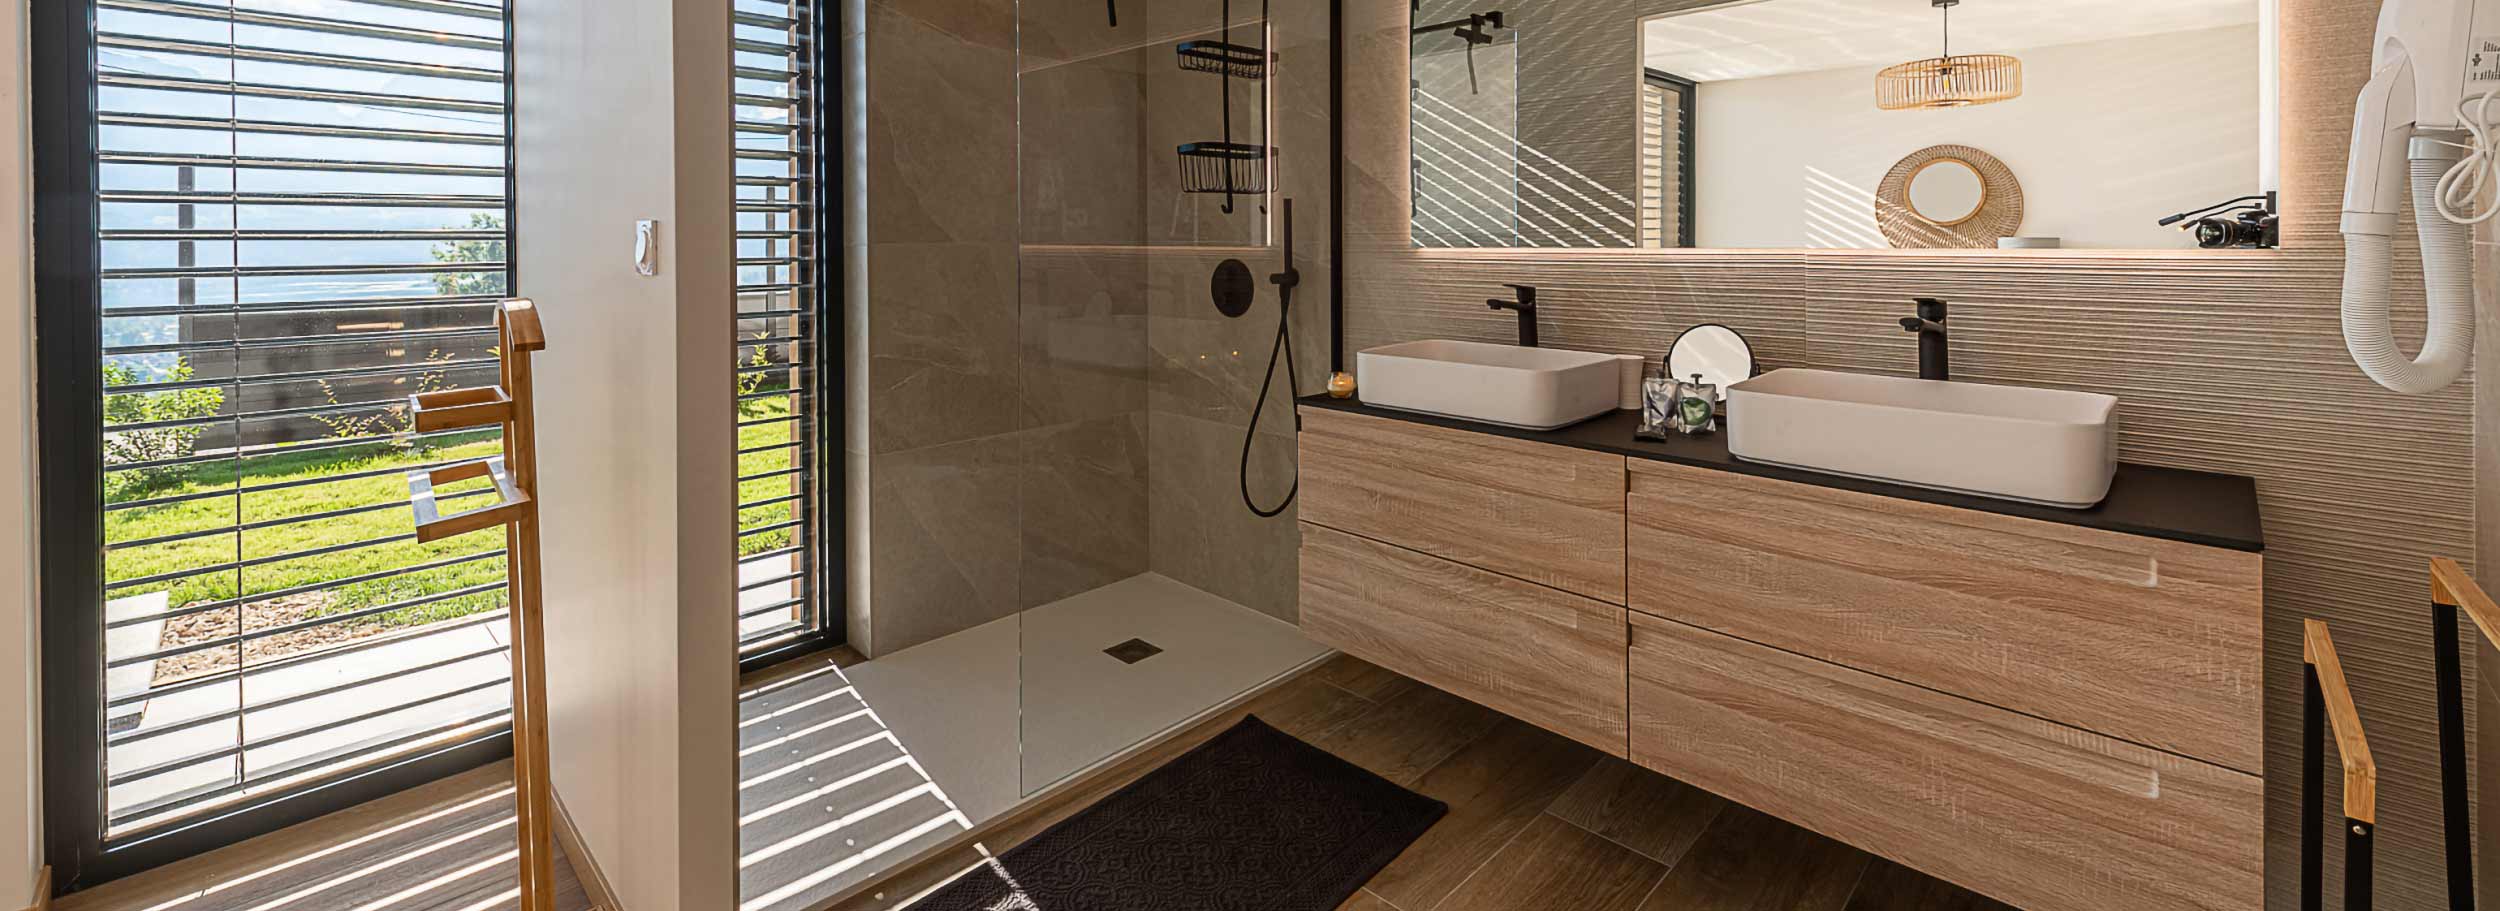 Les plus belles réalisations de nos clients pour les projets salle de bain, pièce de vie et aménagement extérieur.